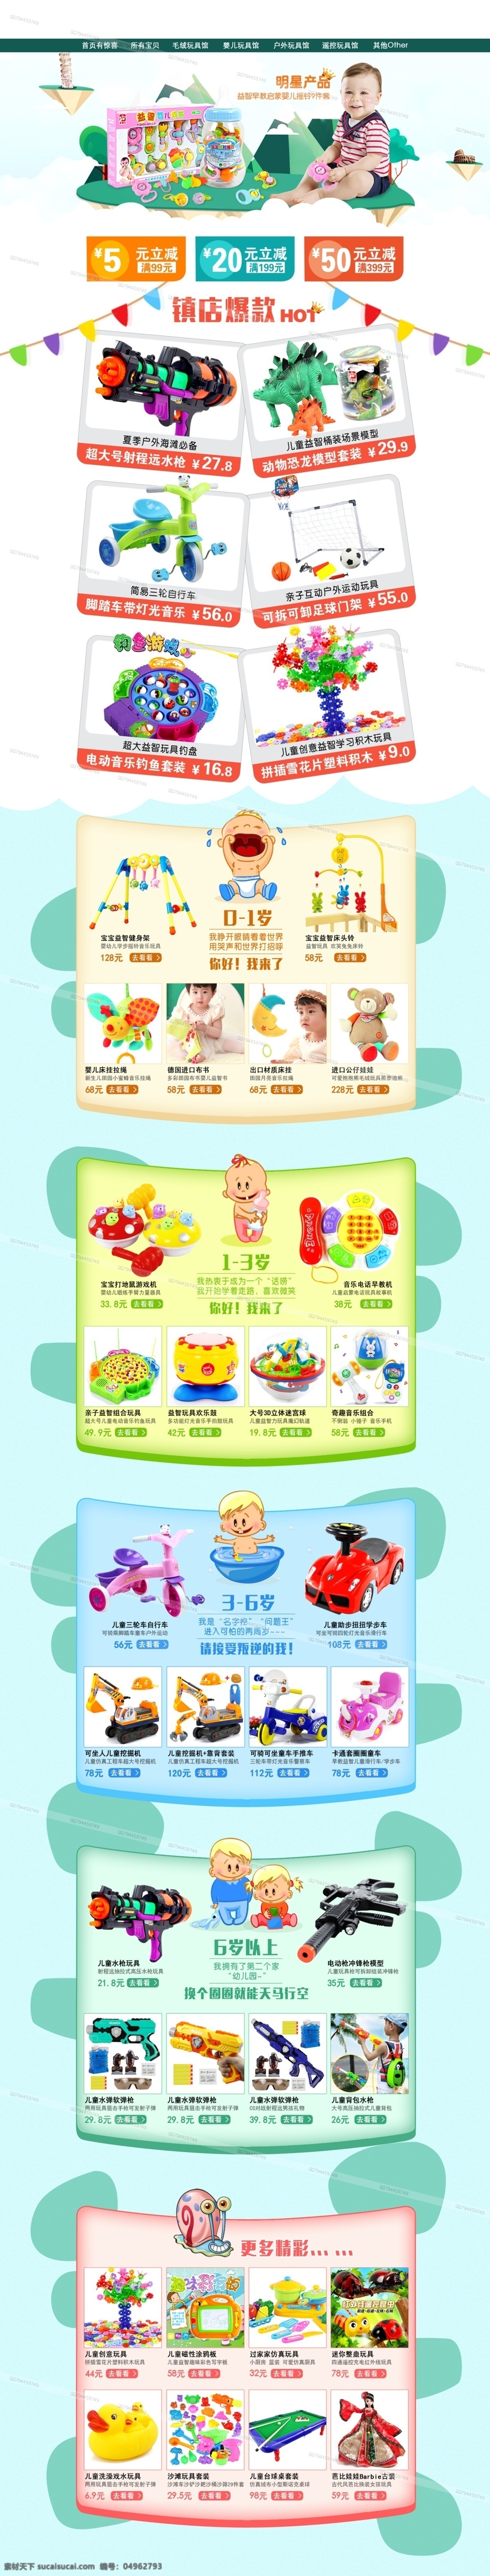 xty 淘宝 天猫 京东 玩具店 首页 装修 淘宝素材 淘宝设计 淘宝模板下载 白色